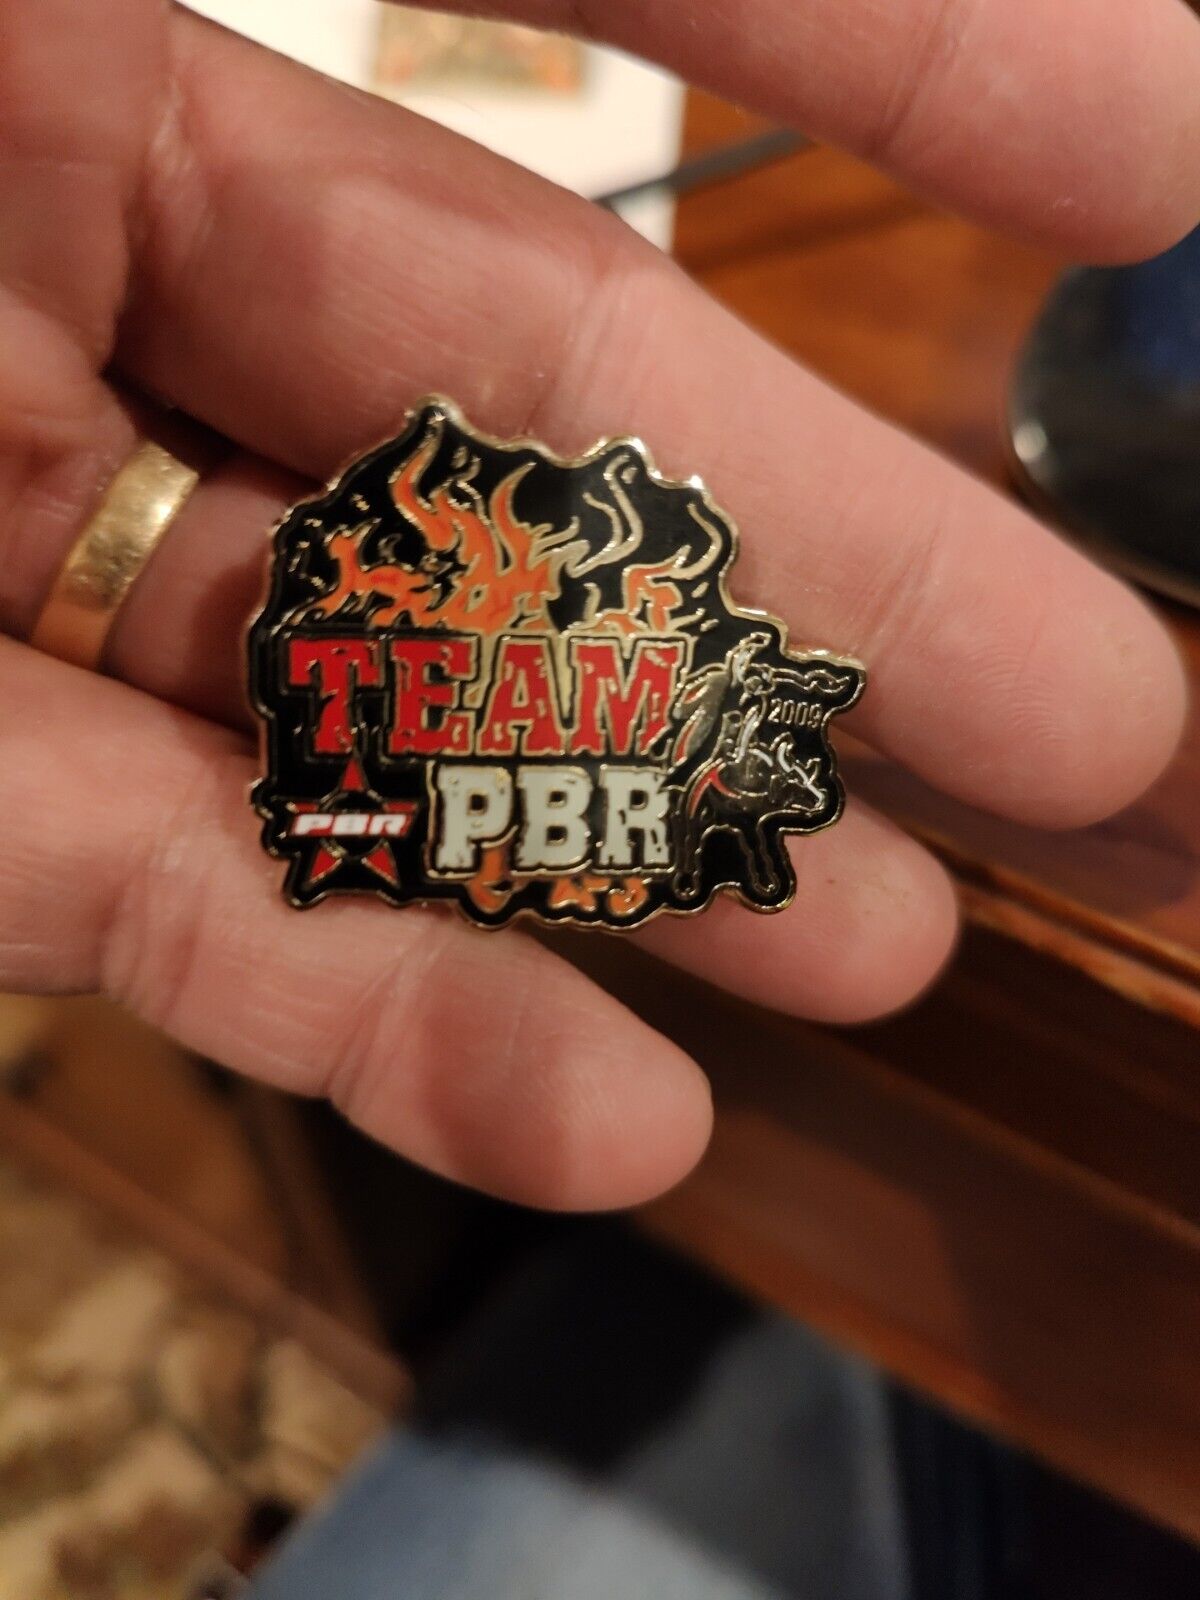 Professional Bull Riders Team PBR Pins, 2009 & 2010